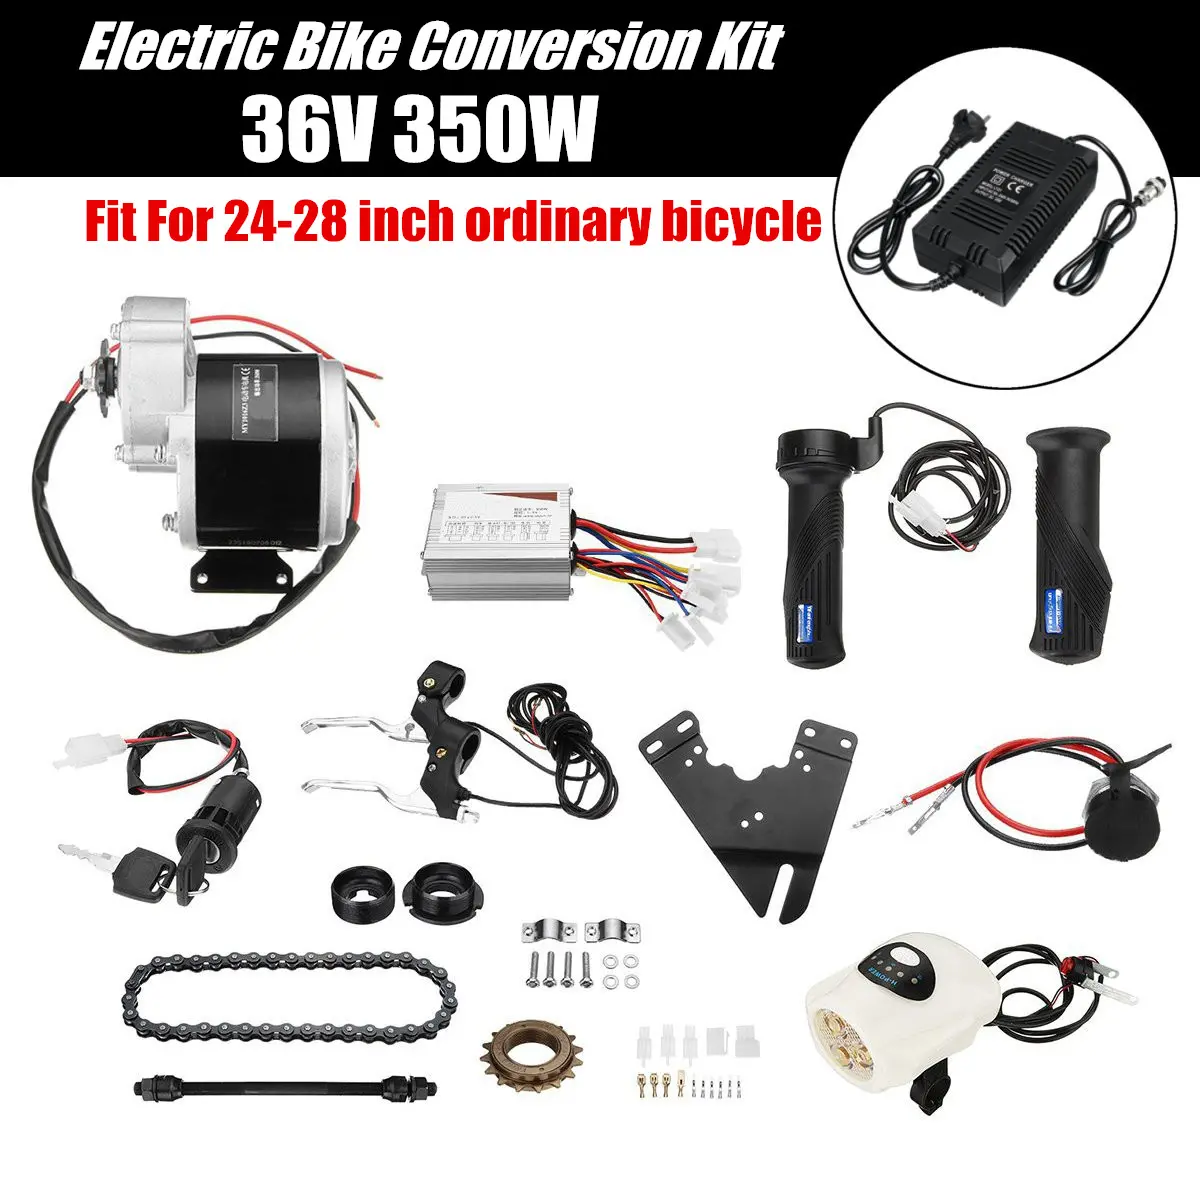 Electric bike conversion kit 36v 350w